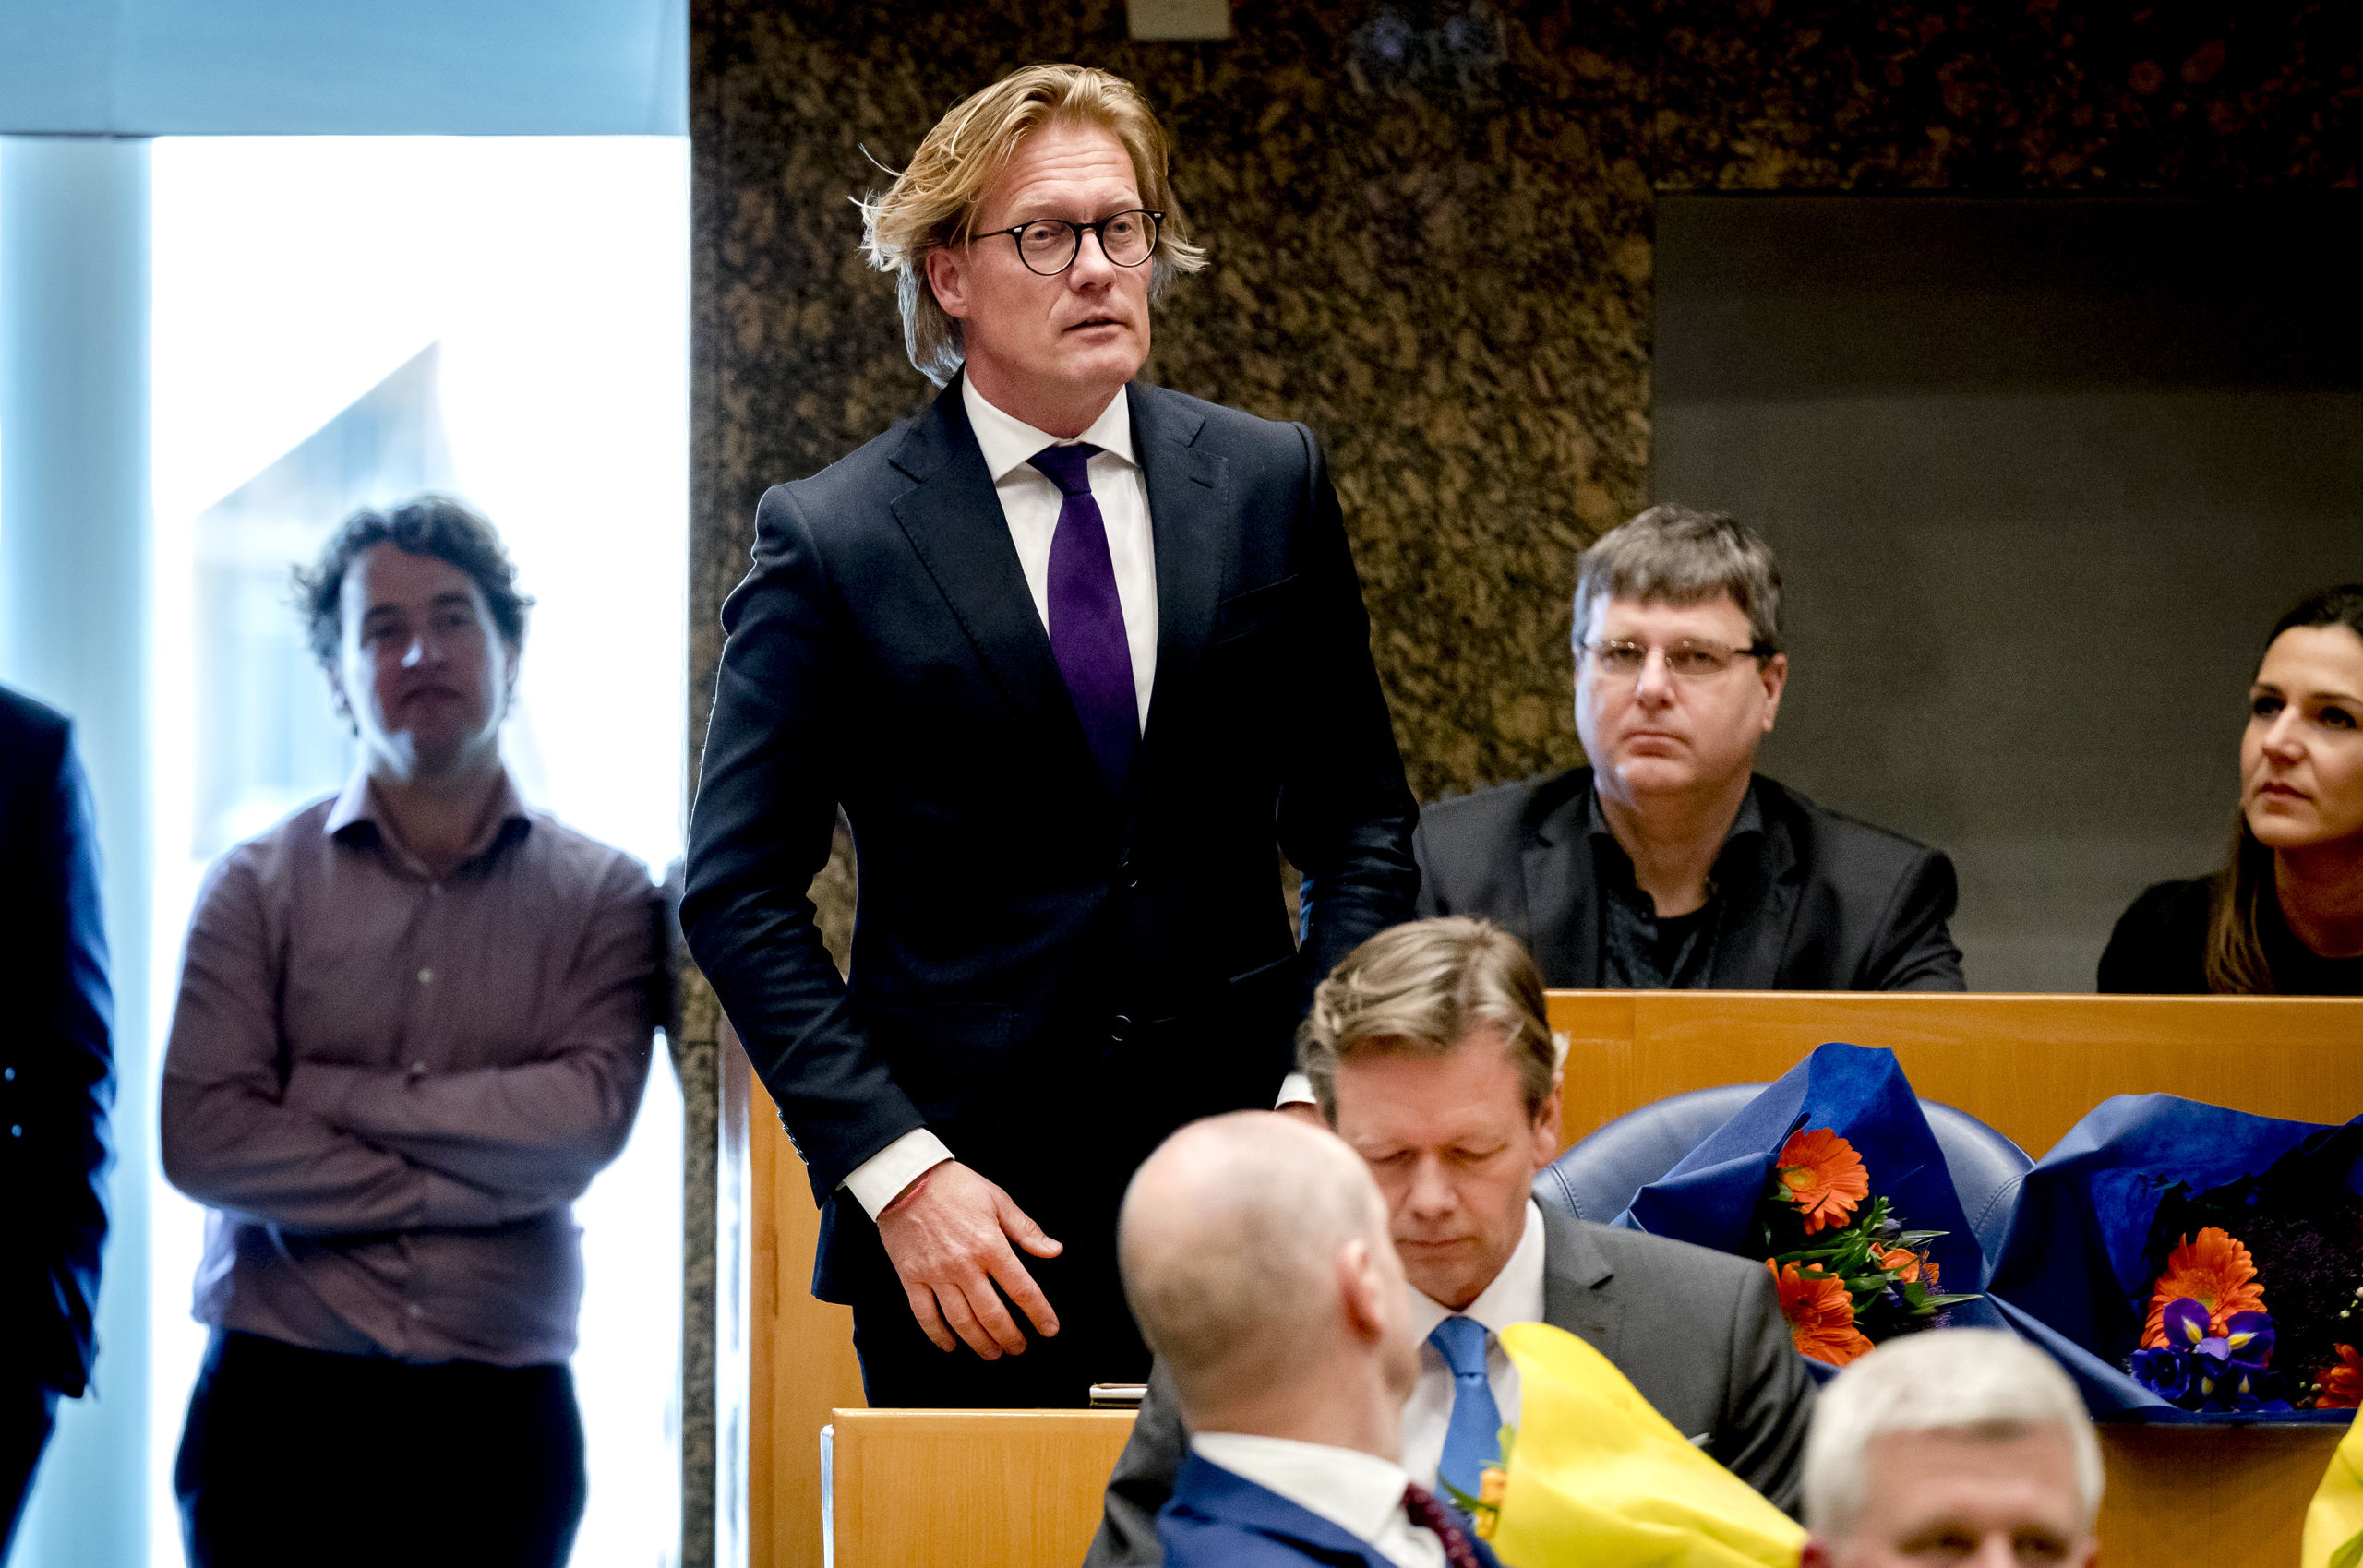 Martin Worsdorfer (VVD) legt de eed af tijdens de installatie van de nieuwe Kamerleden na de Tweede Kamerverkiezingen.